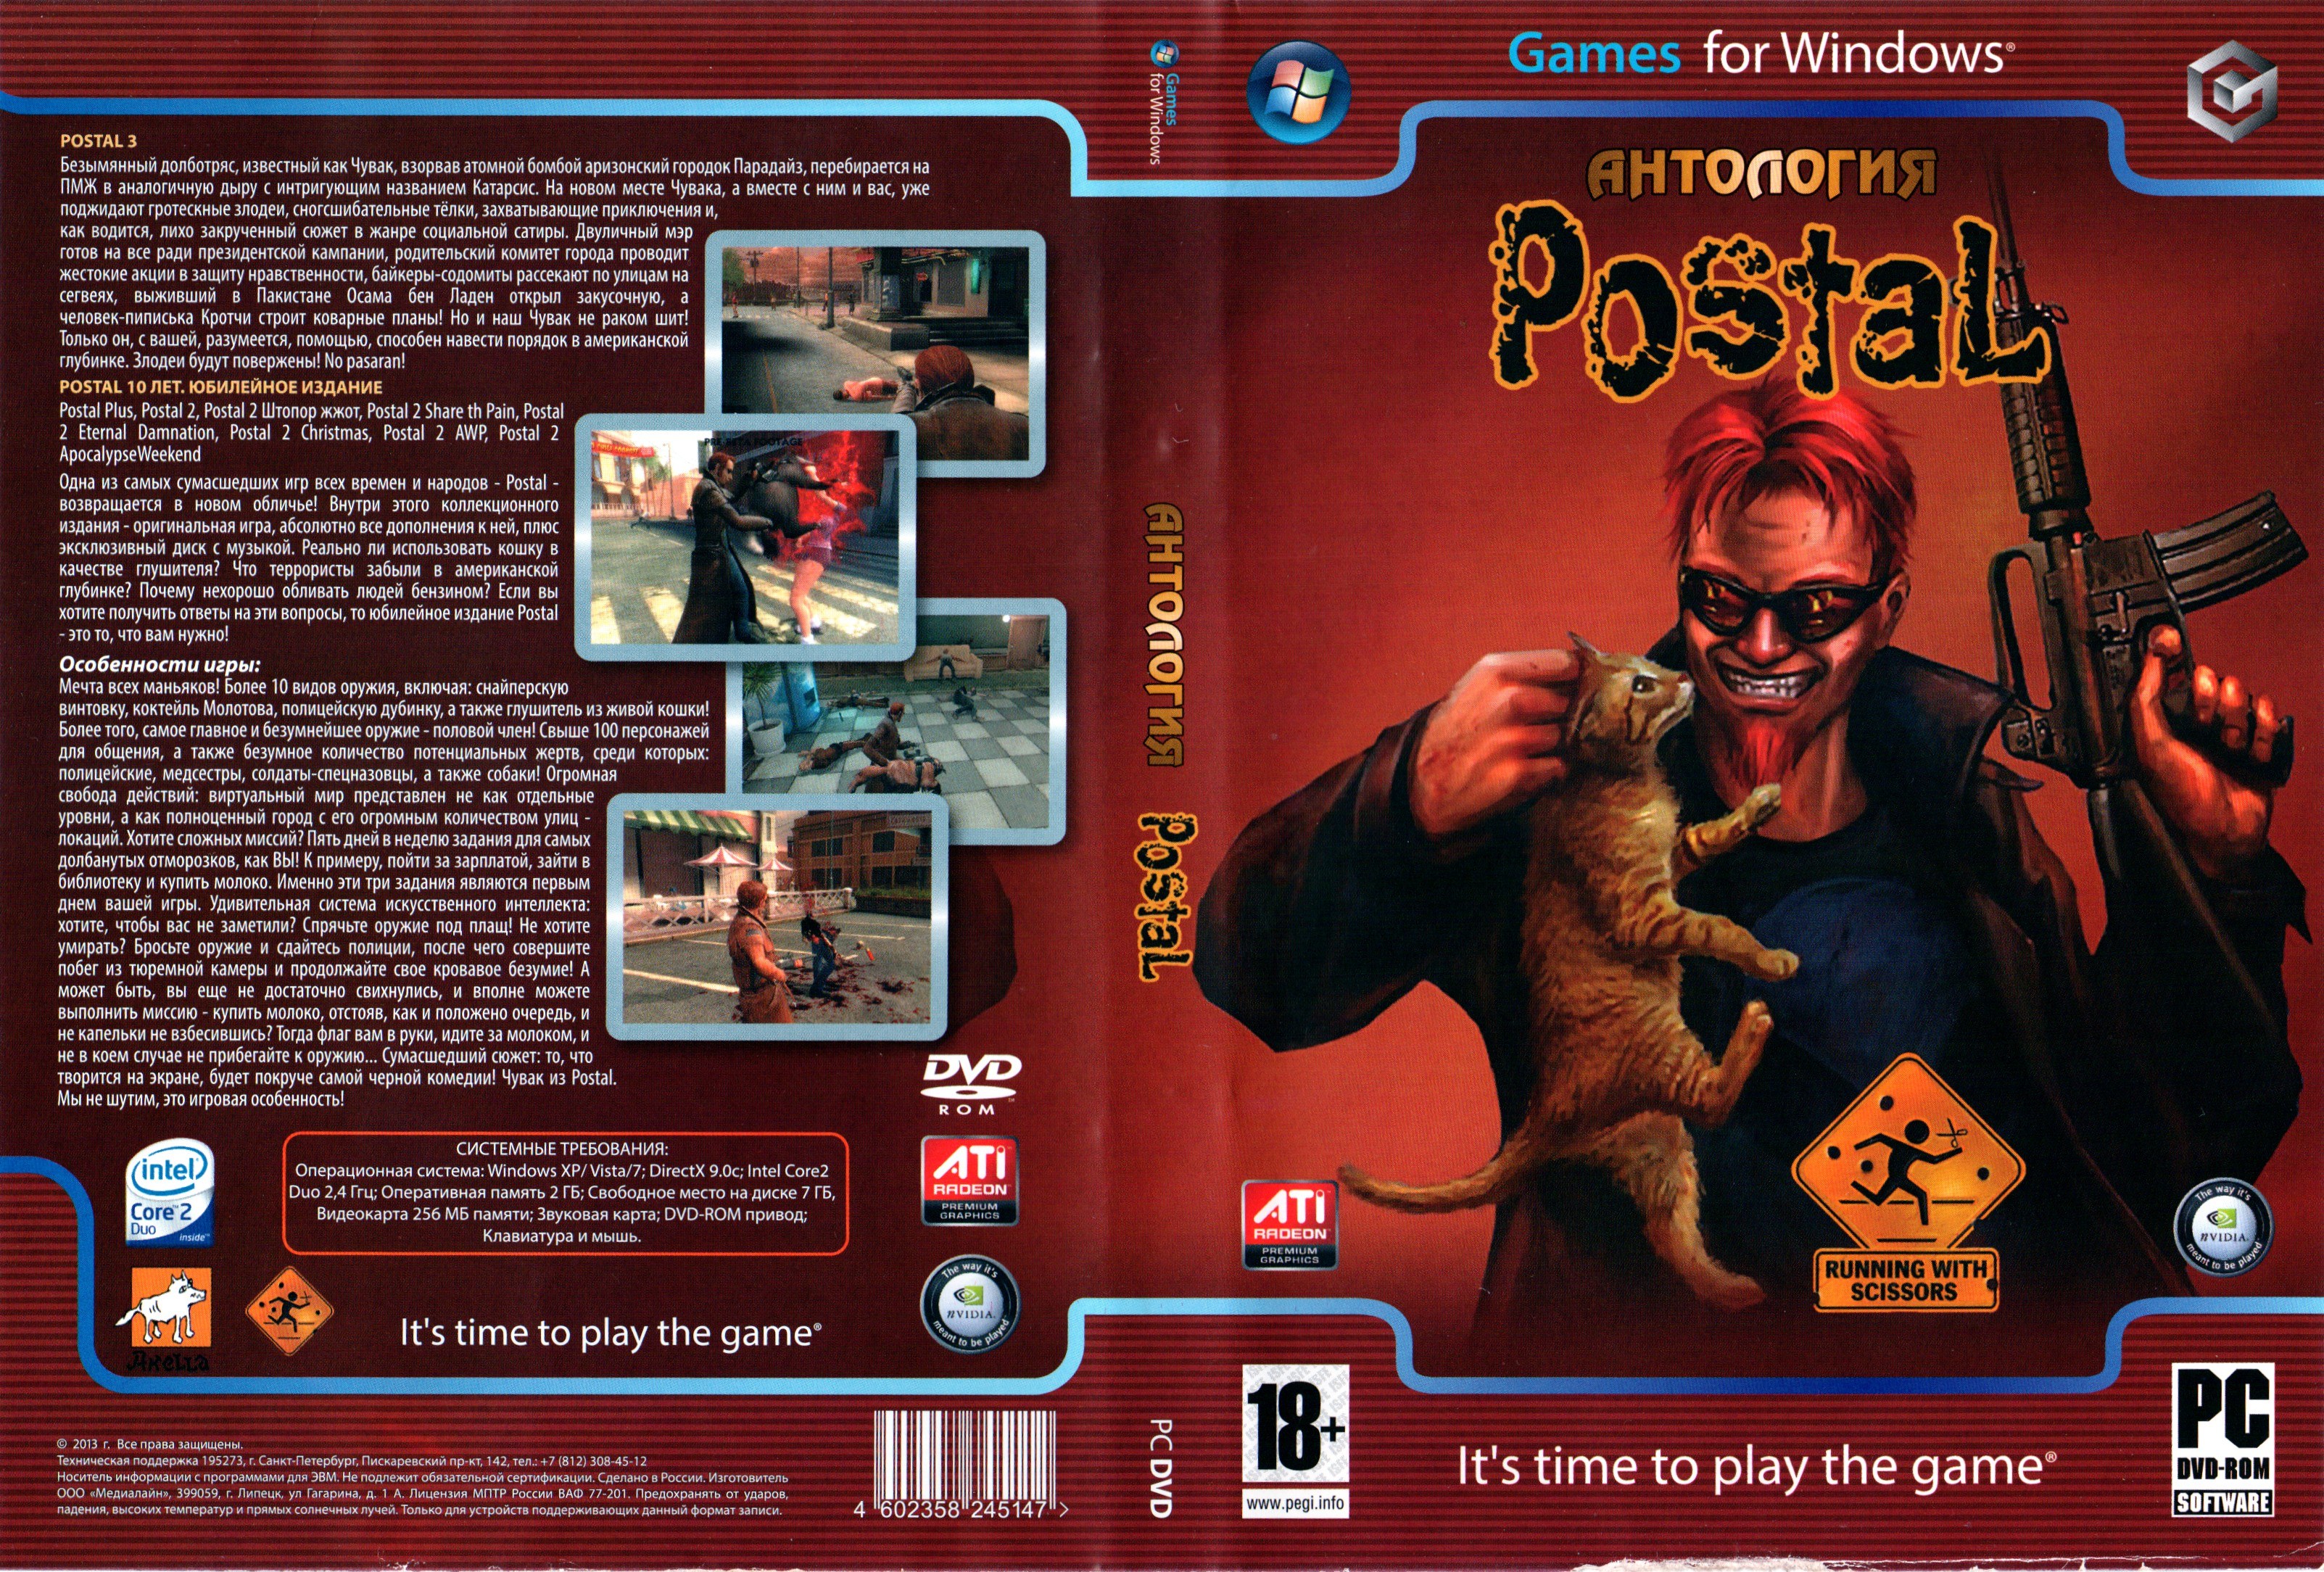 Играть 1 плюс 1. Postal 3 ПК диск. Postal 2 обложка игры. Постал 2 диск. Postal 3 обложка DVD.